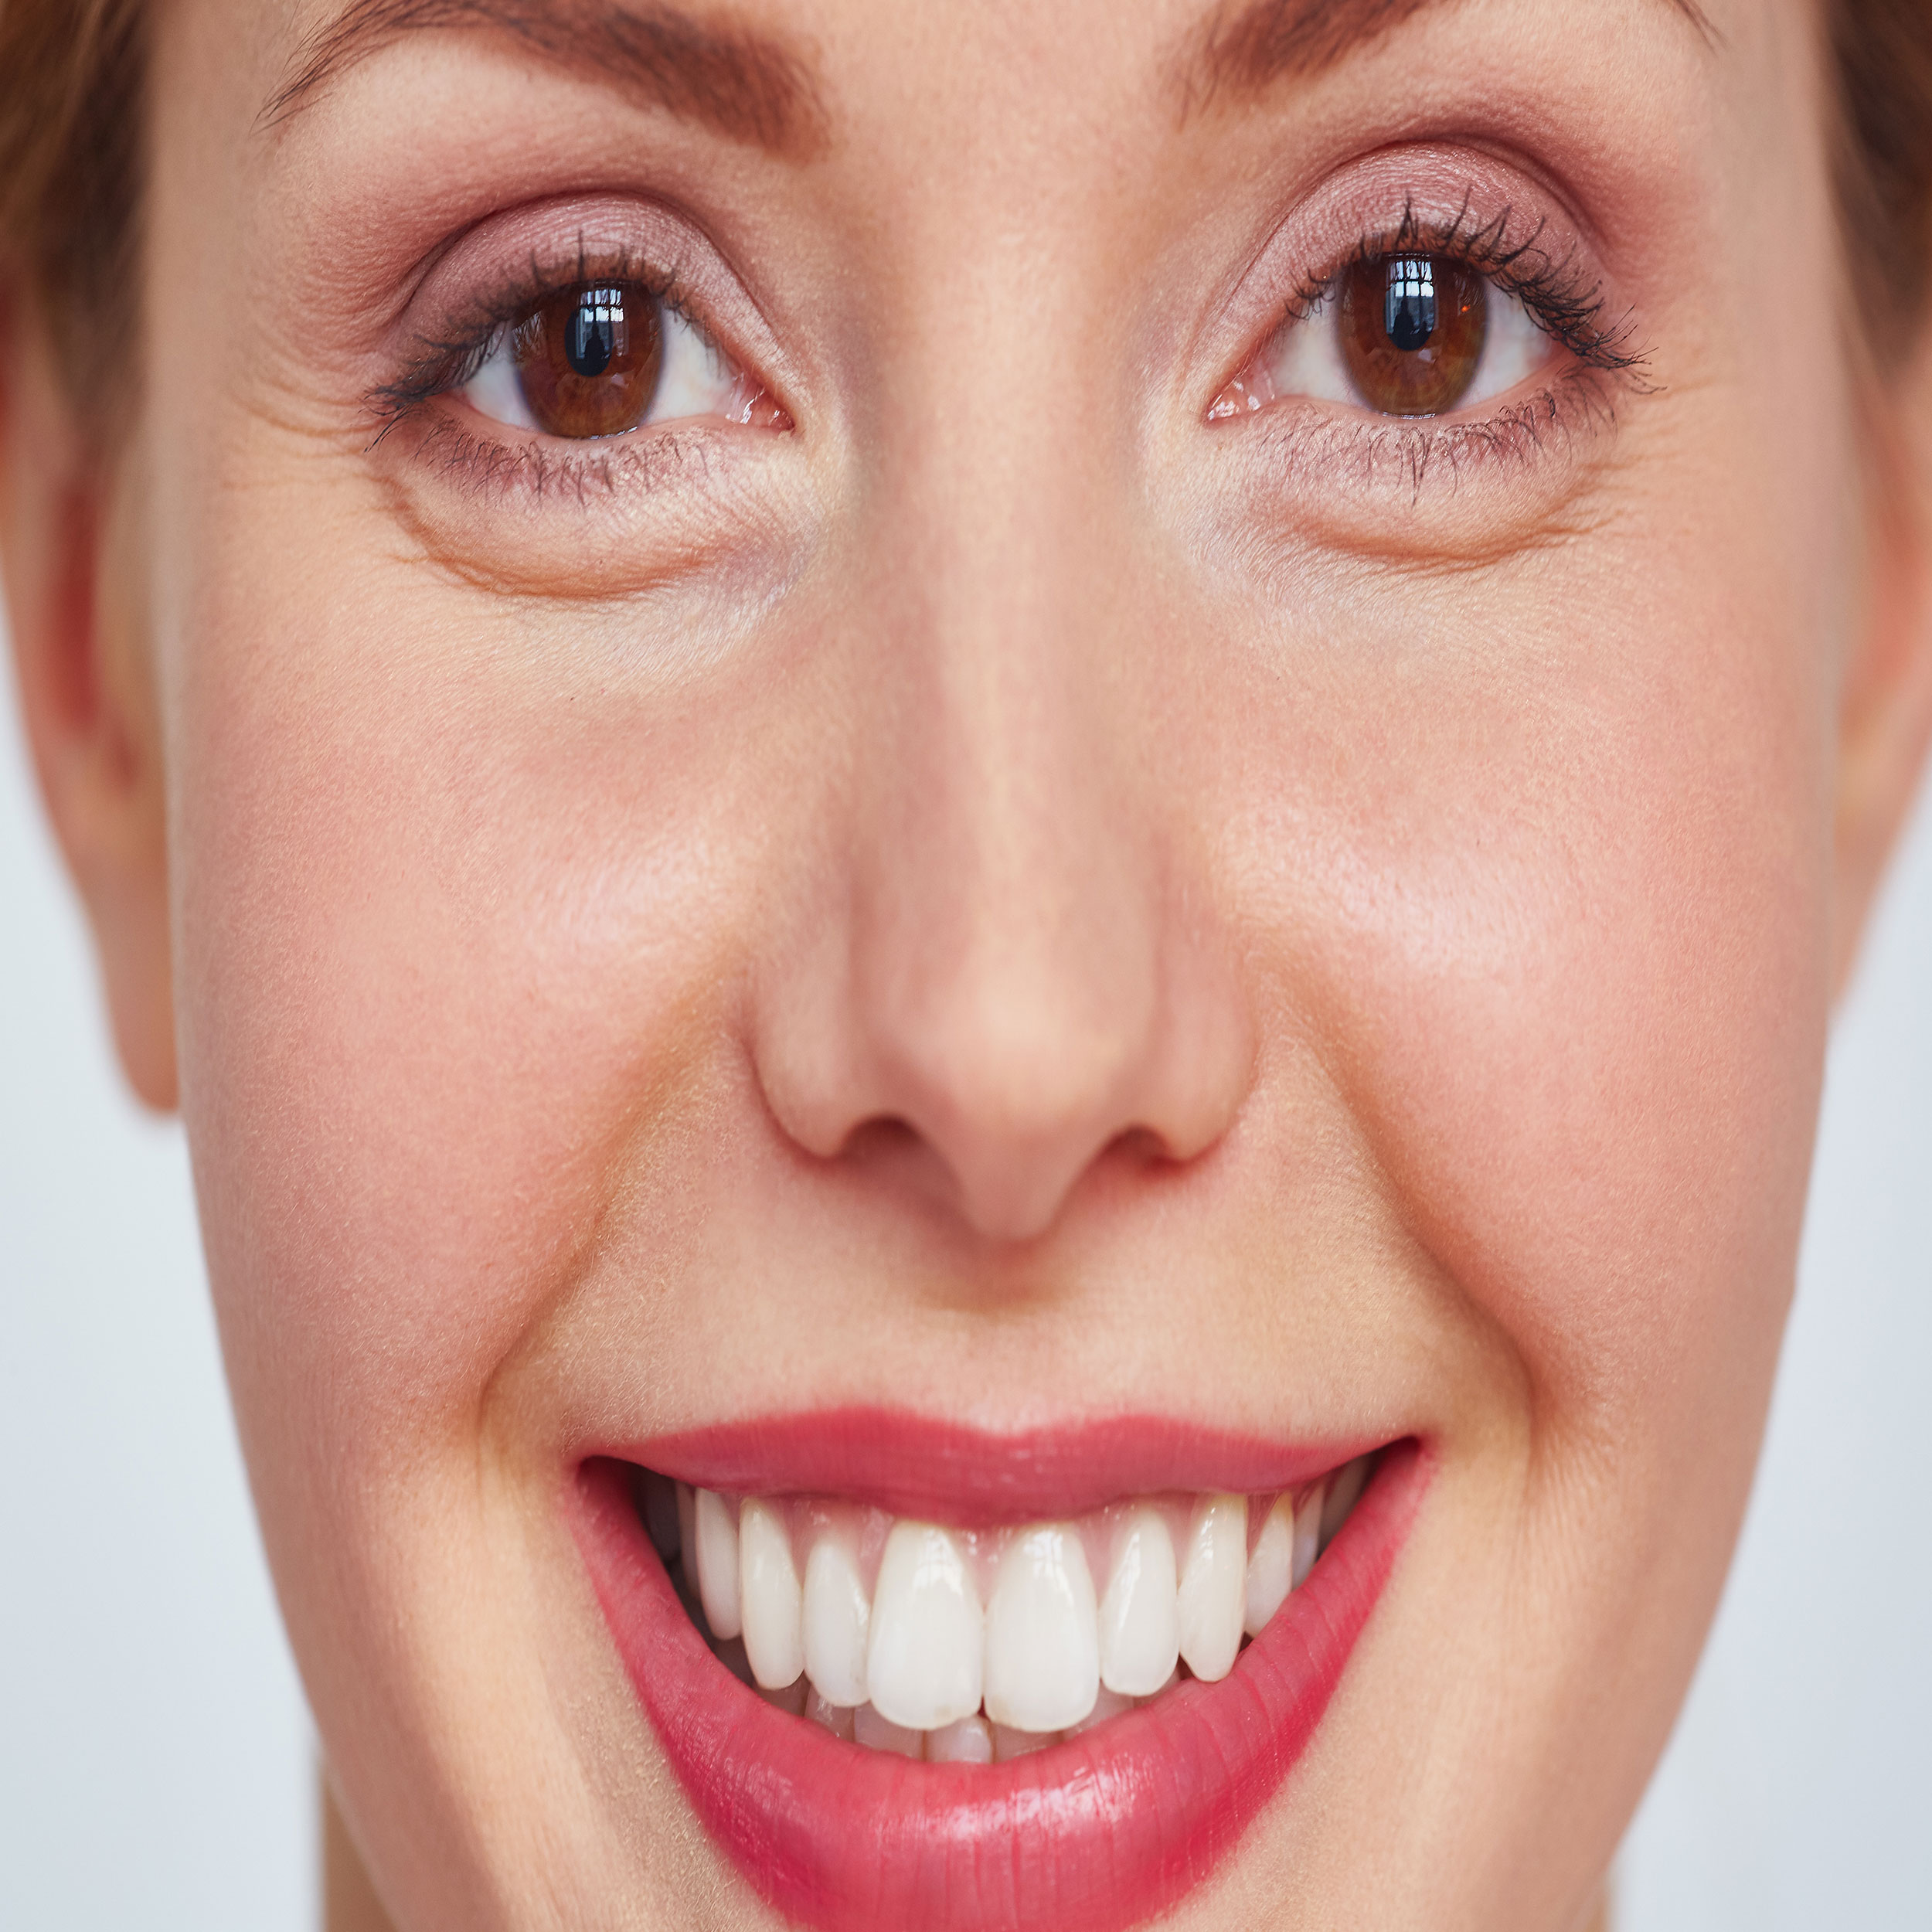 کامپوزیت ونیر برای اصلاح طرح لبخند و عیوب جزیی دندان است.